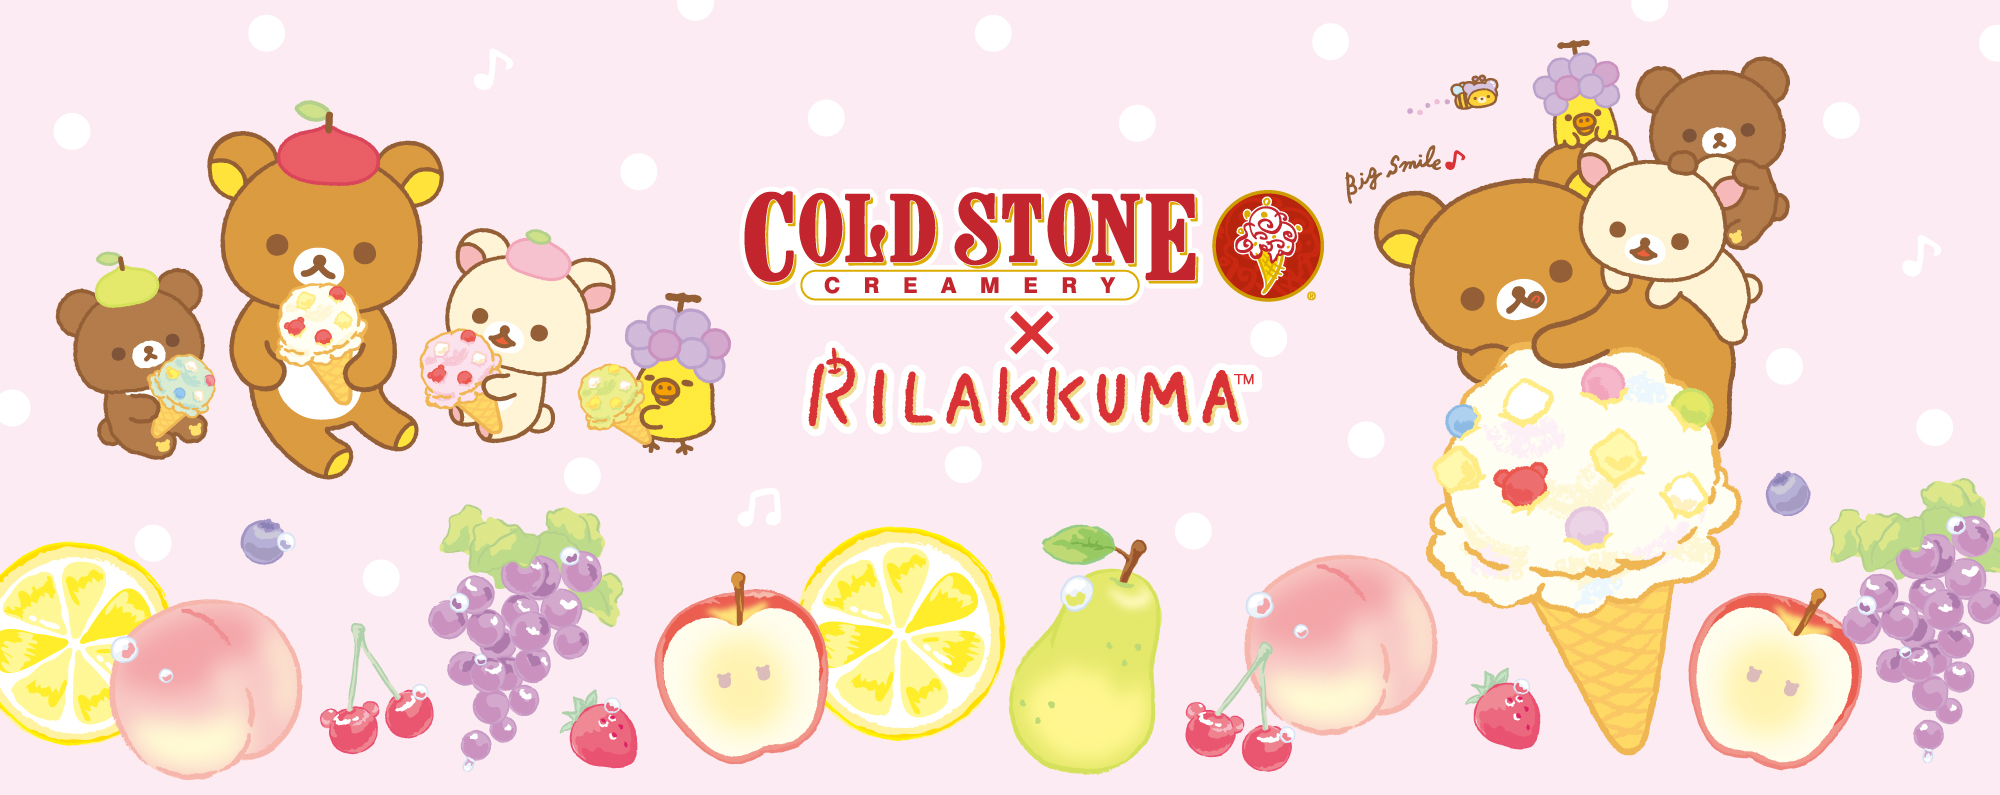 年3月26日 木 より 日本国内のコールド ストーン クリーマリー全店にてリラックマとのコラボレーションメニューを発売します コールドストーンクリーマリージャパン Cold Stone Creamery Japan